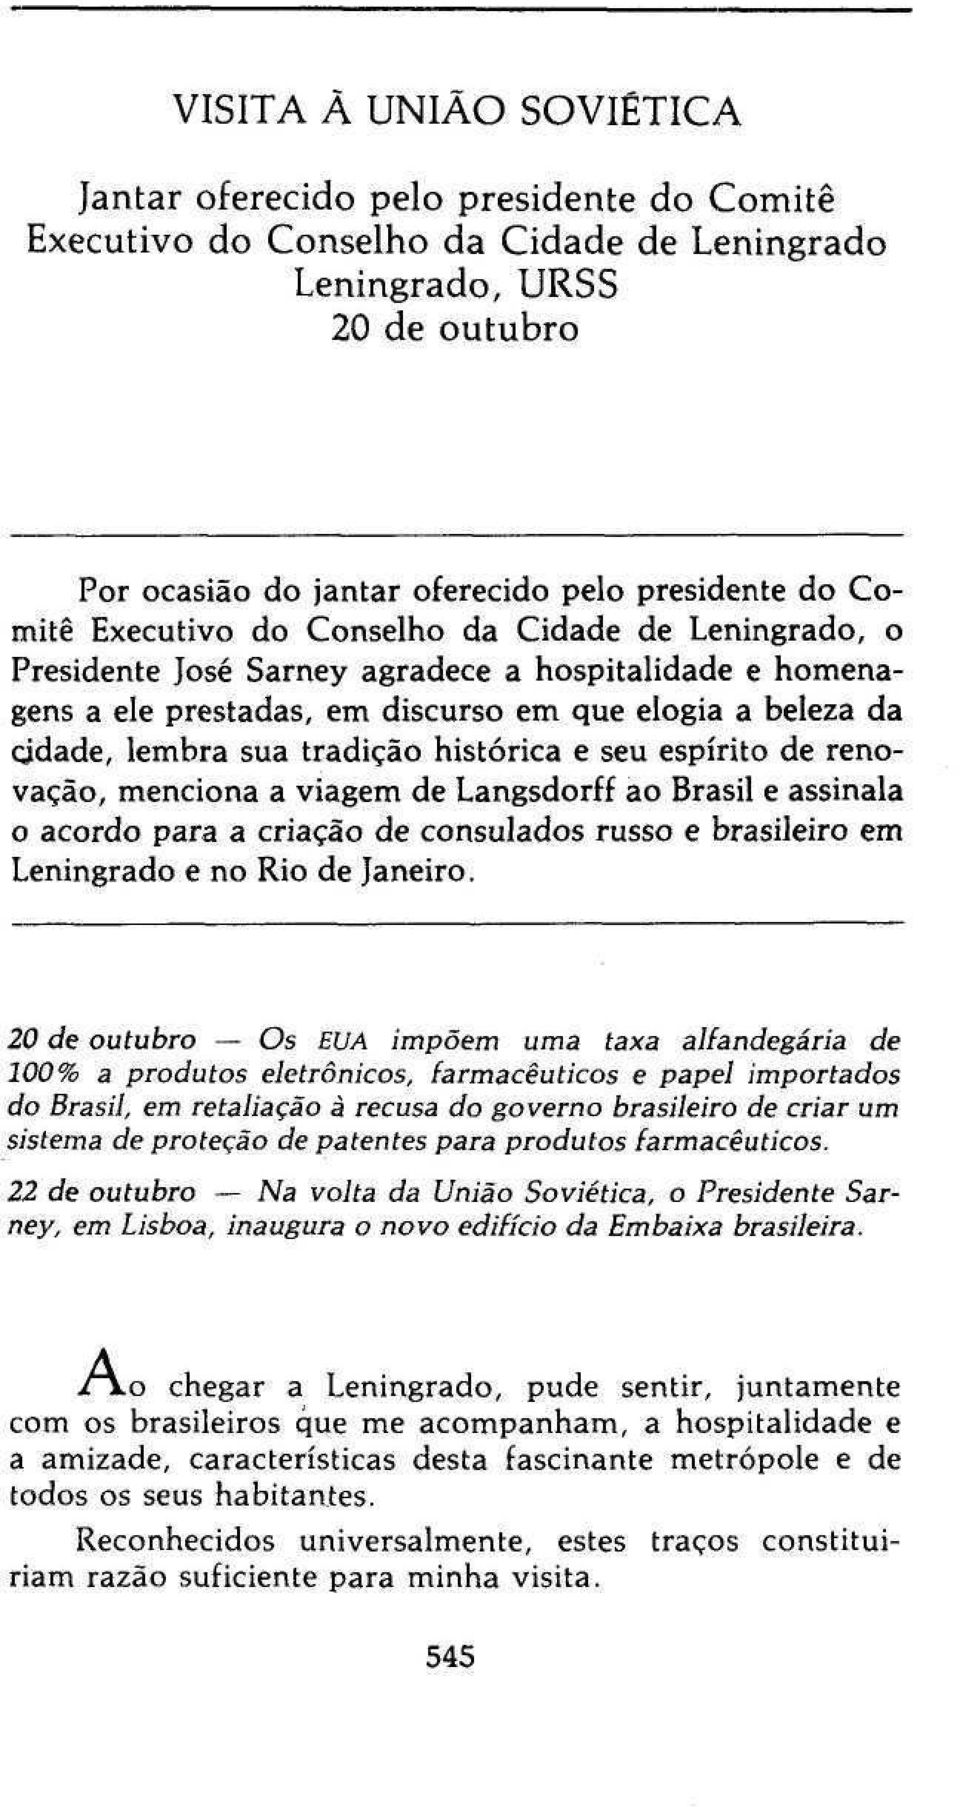 histórica e seu espírito de renovação, menciona a viagem de Langsdorff ao Brasil e assinala o acordo para a criação de consulados russo e brasileiro em Leningrado e no Rio de Janeiro.